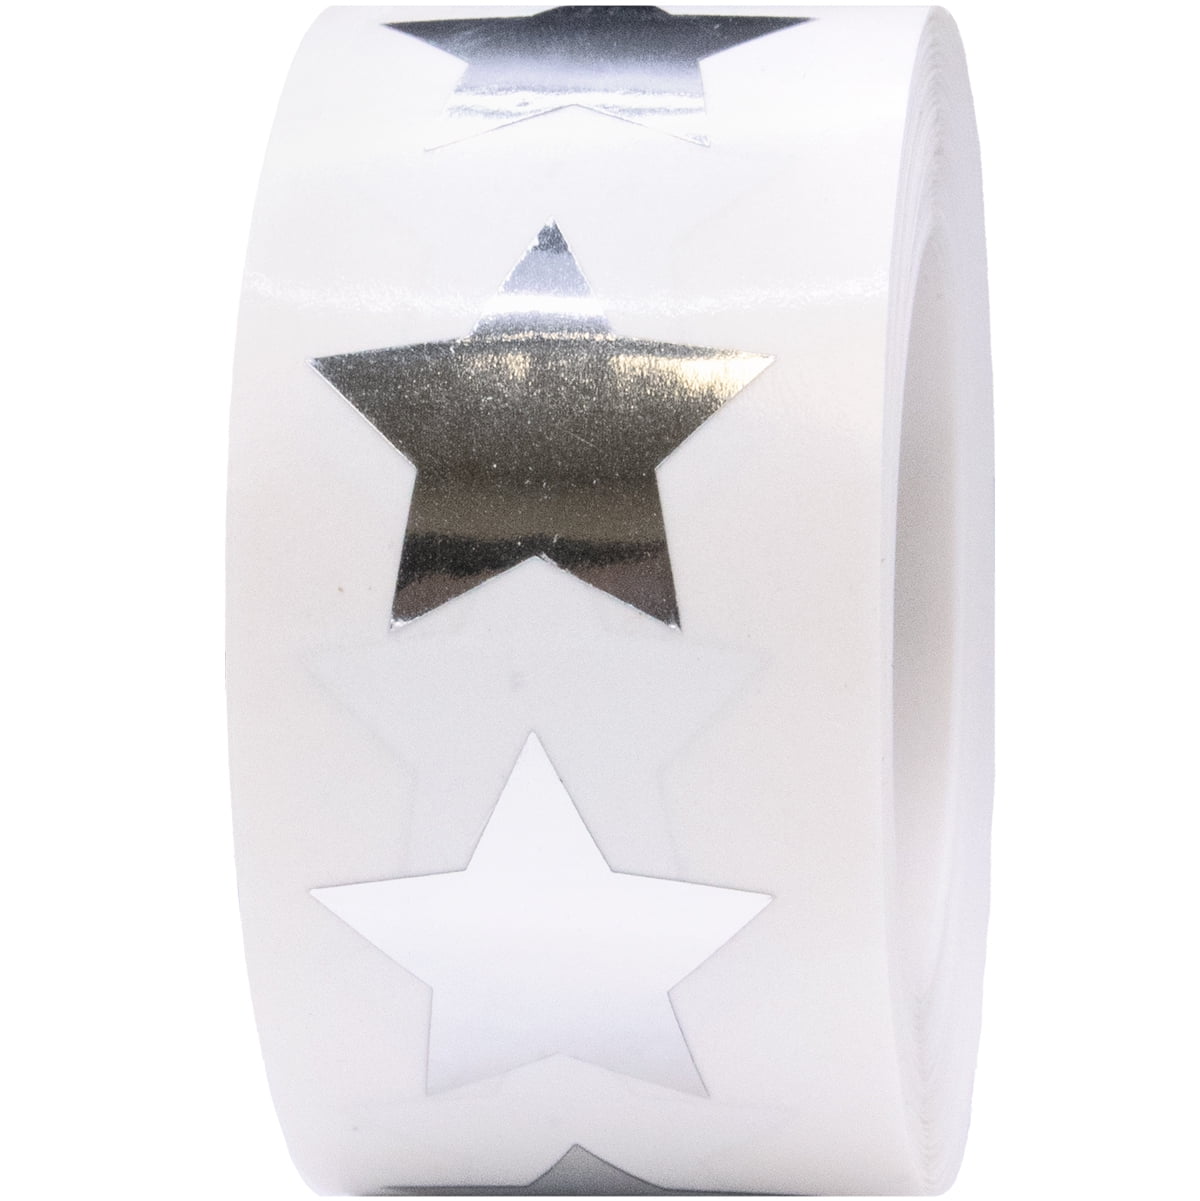 350 Silver Stars School Teacher Reward Stickers Self Adhesive 15mm I31 